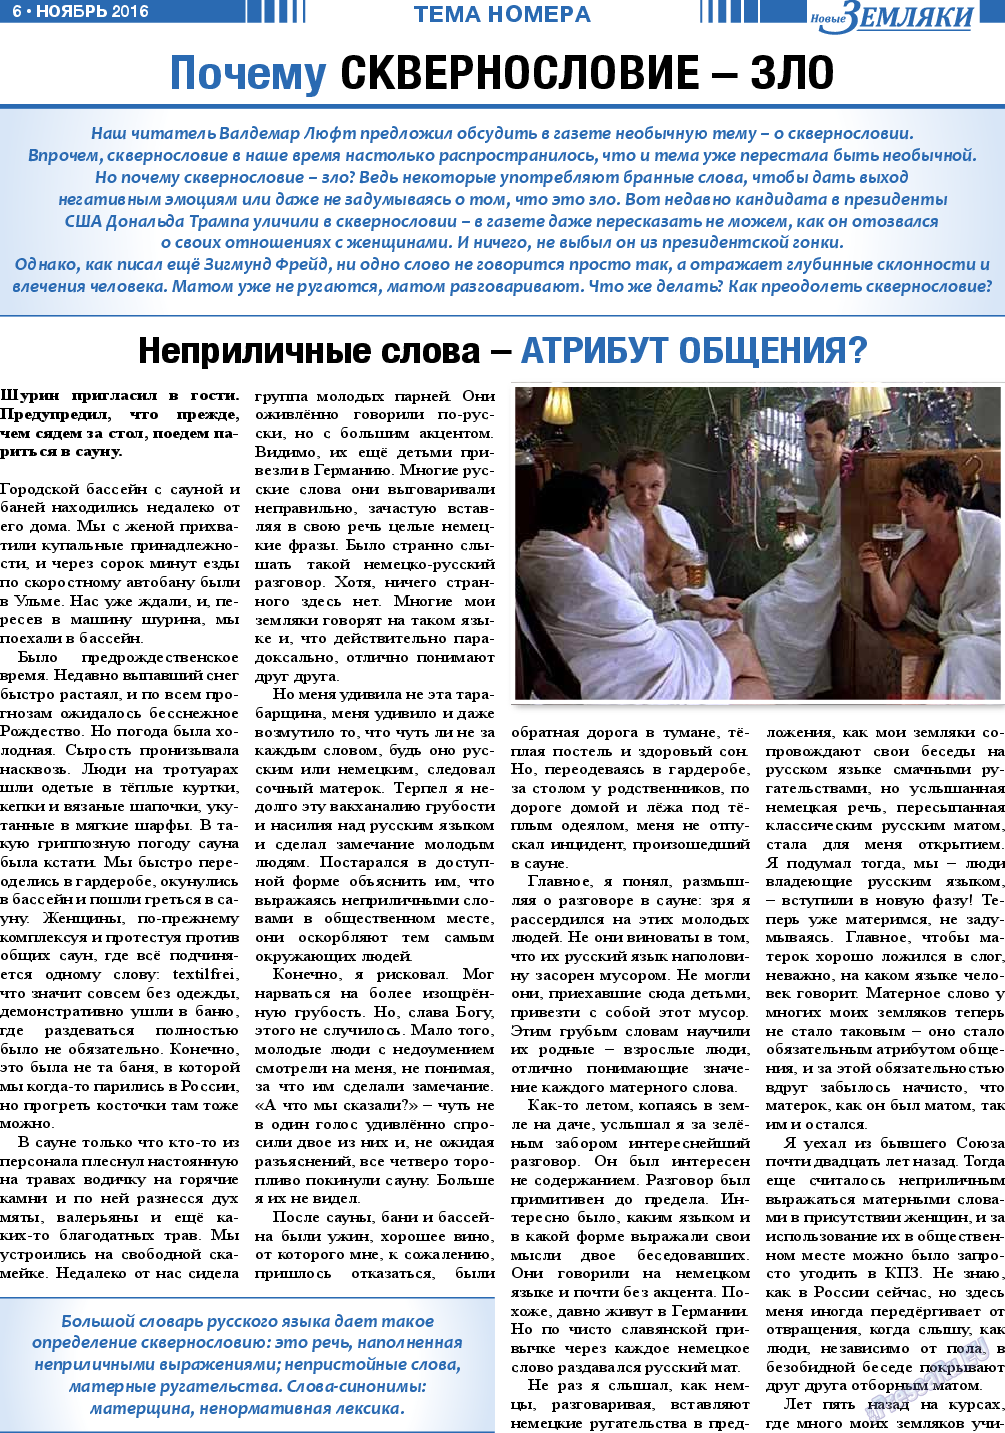 Новые Земляки (газета). 2016 год, номер 11, стр. 6